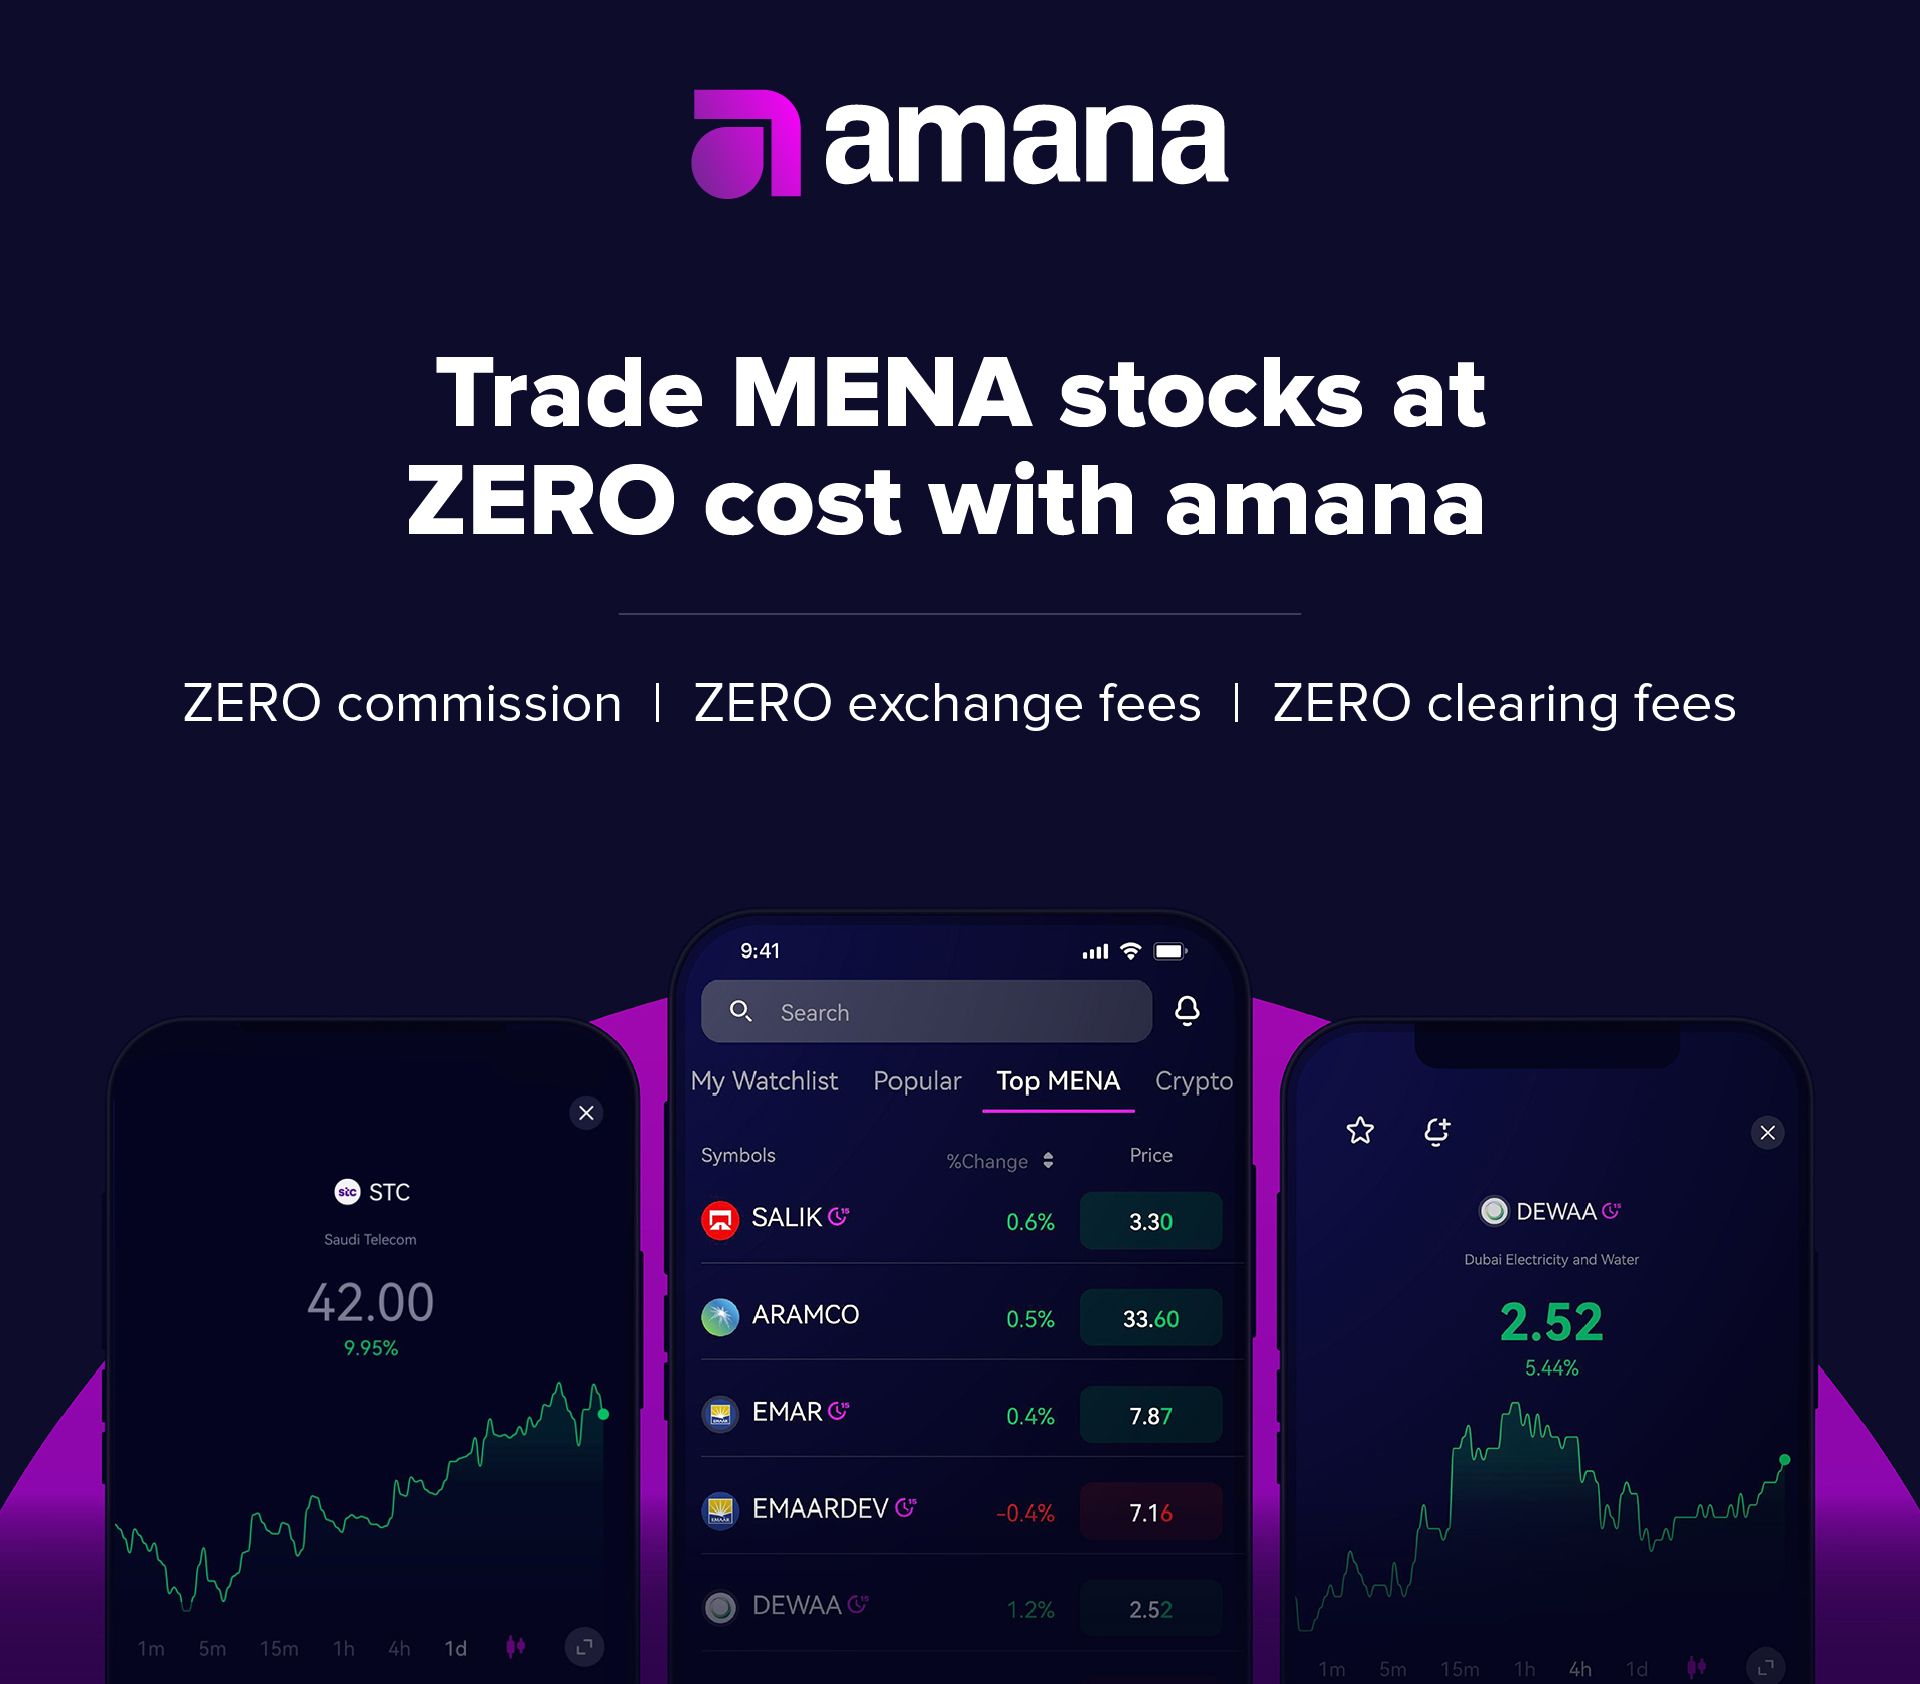 Trade MENA stocks at ZERO cost with amana